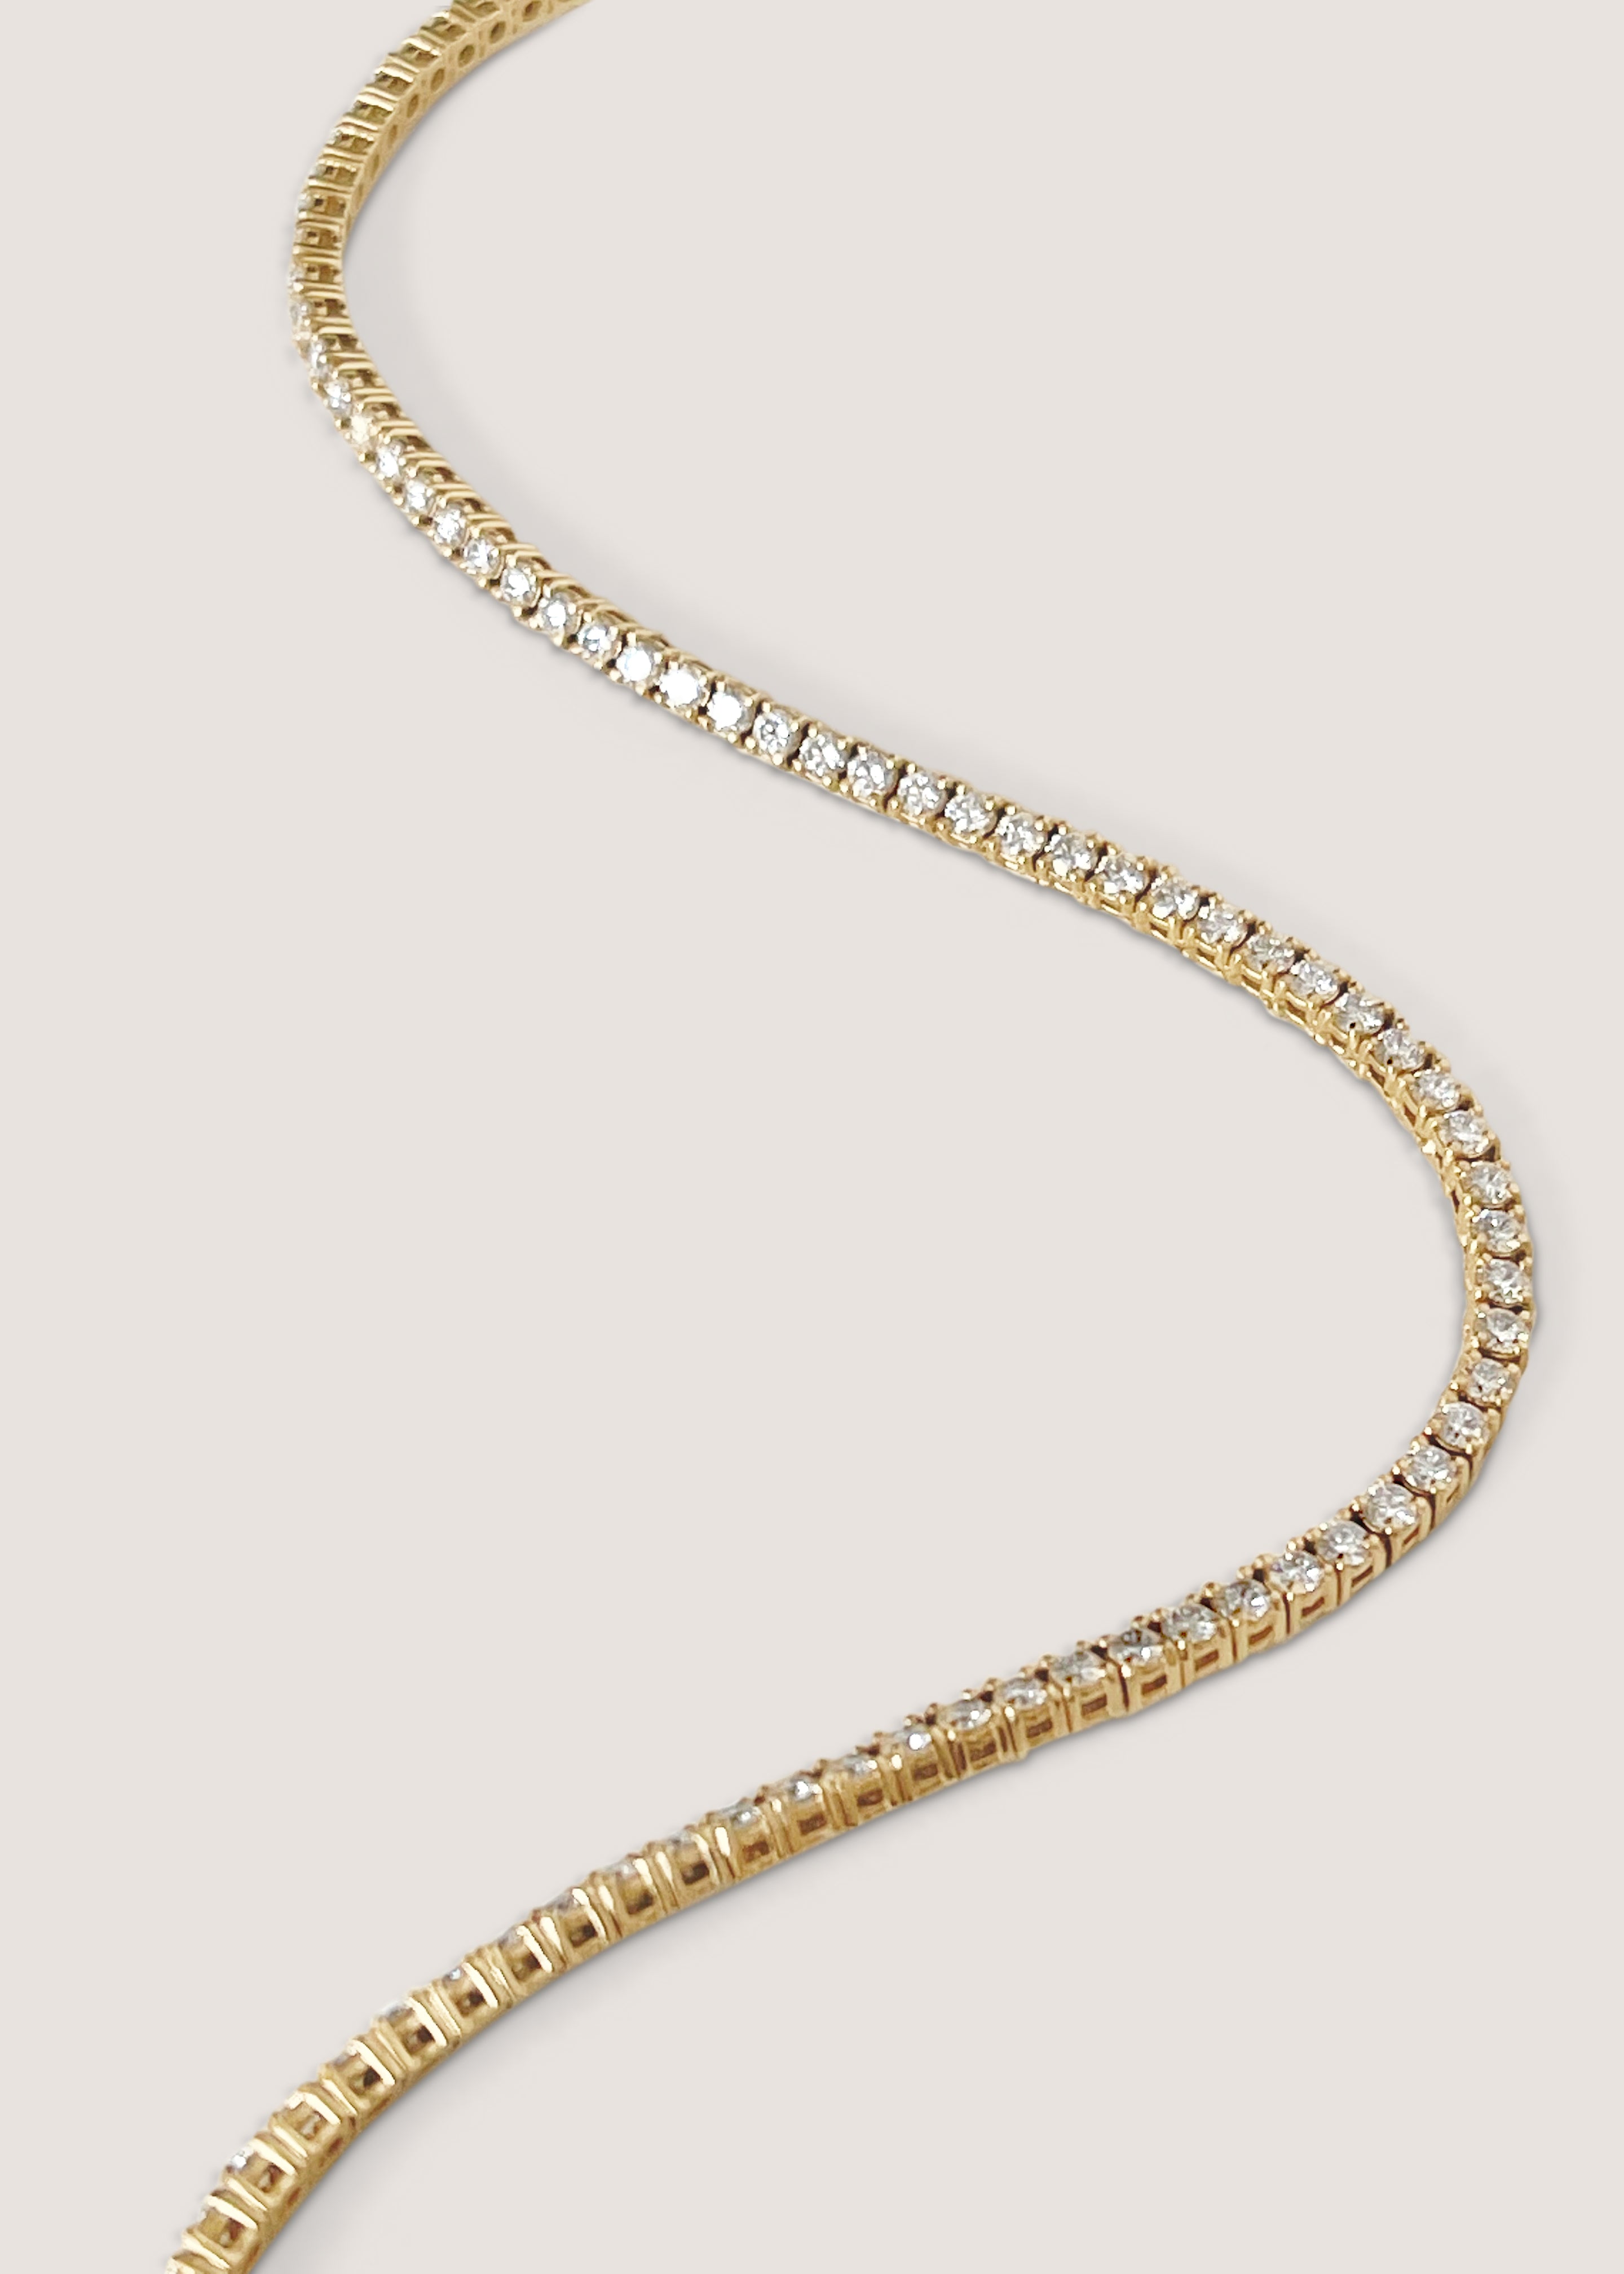 Petite Diana Diamond Tennis Necklace – Kinn